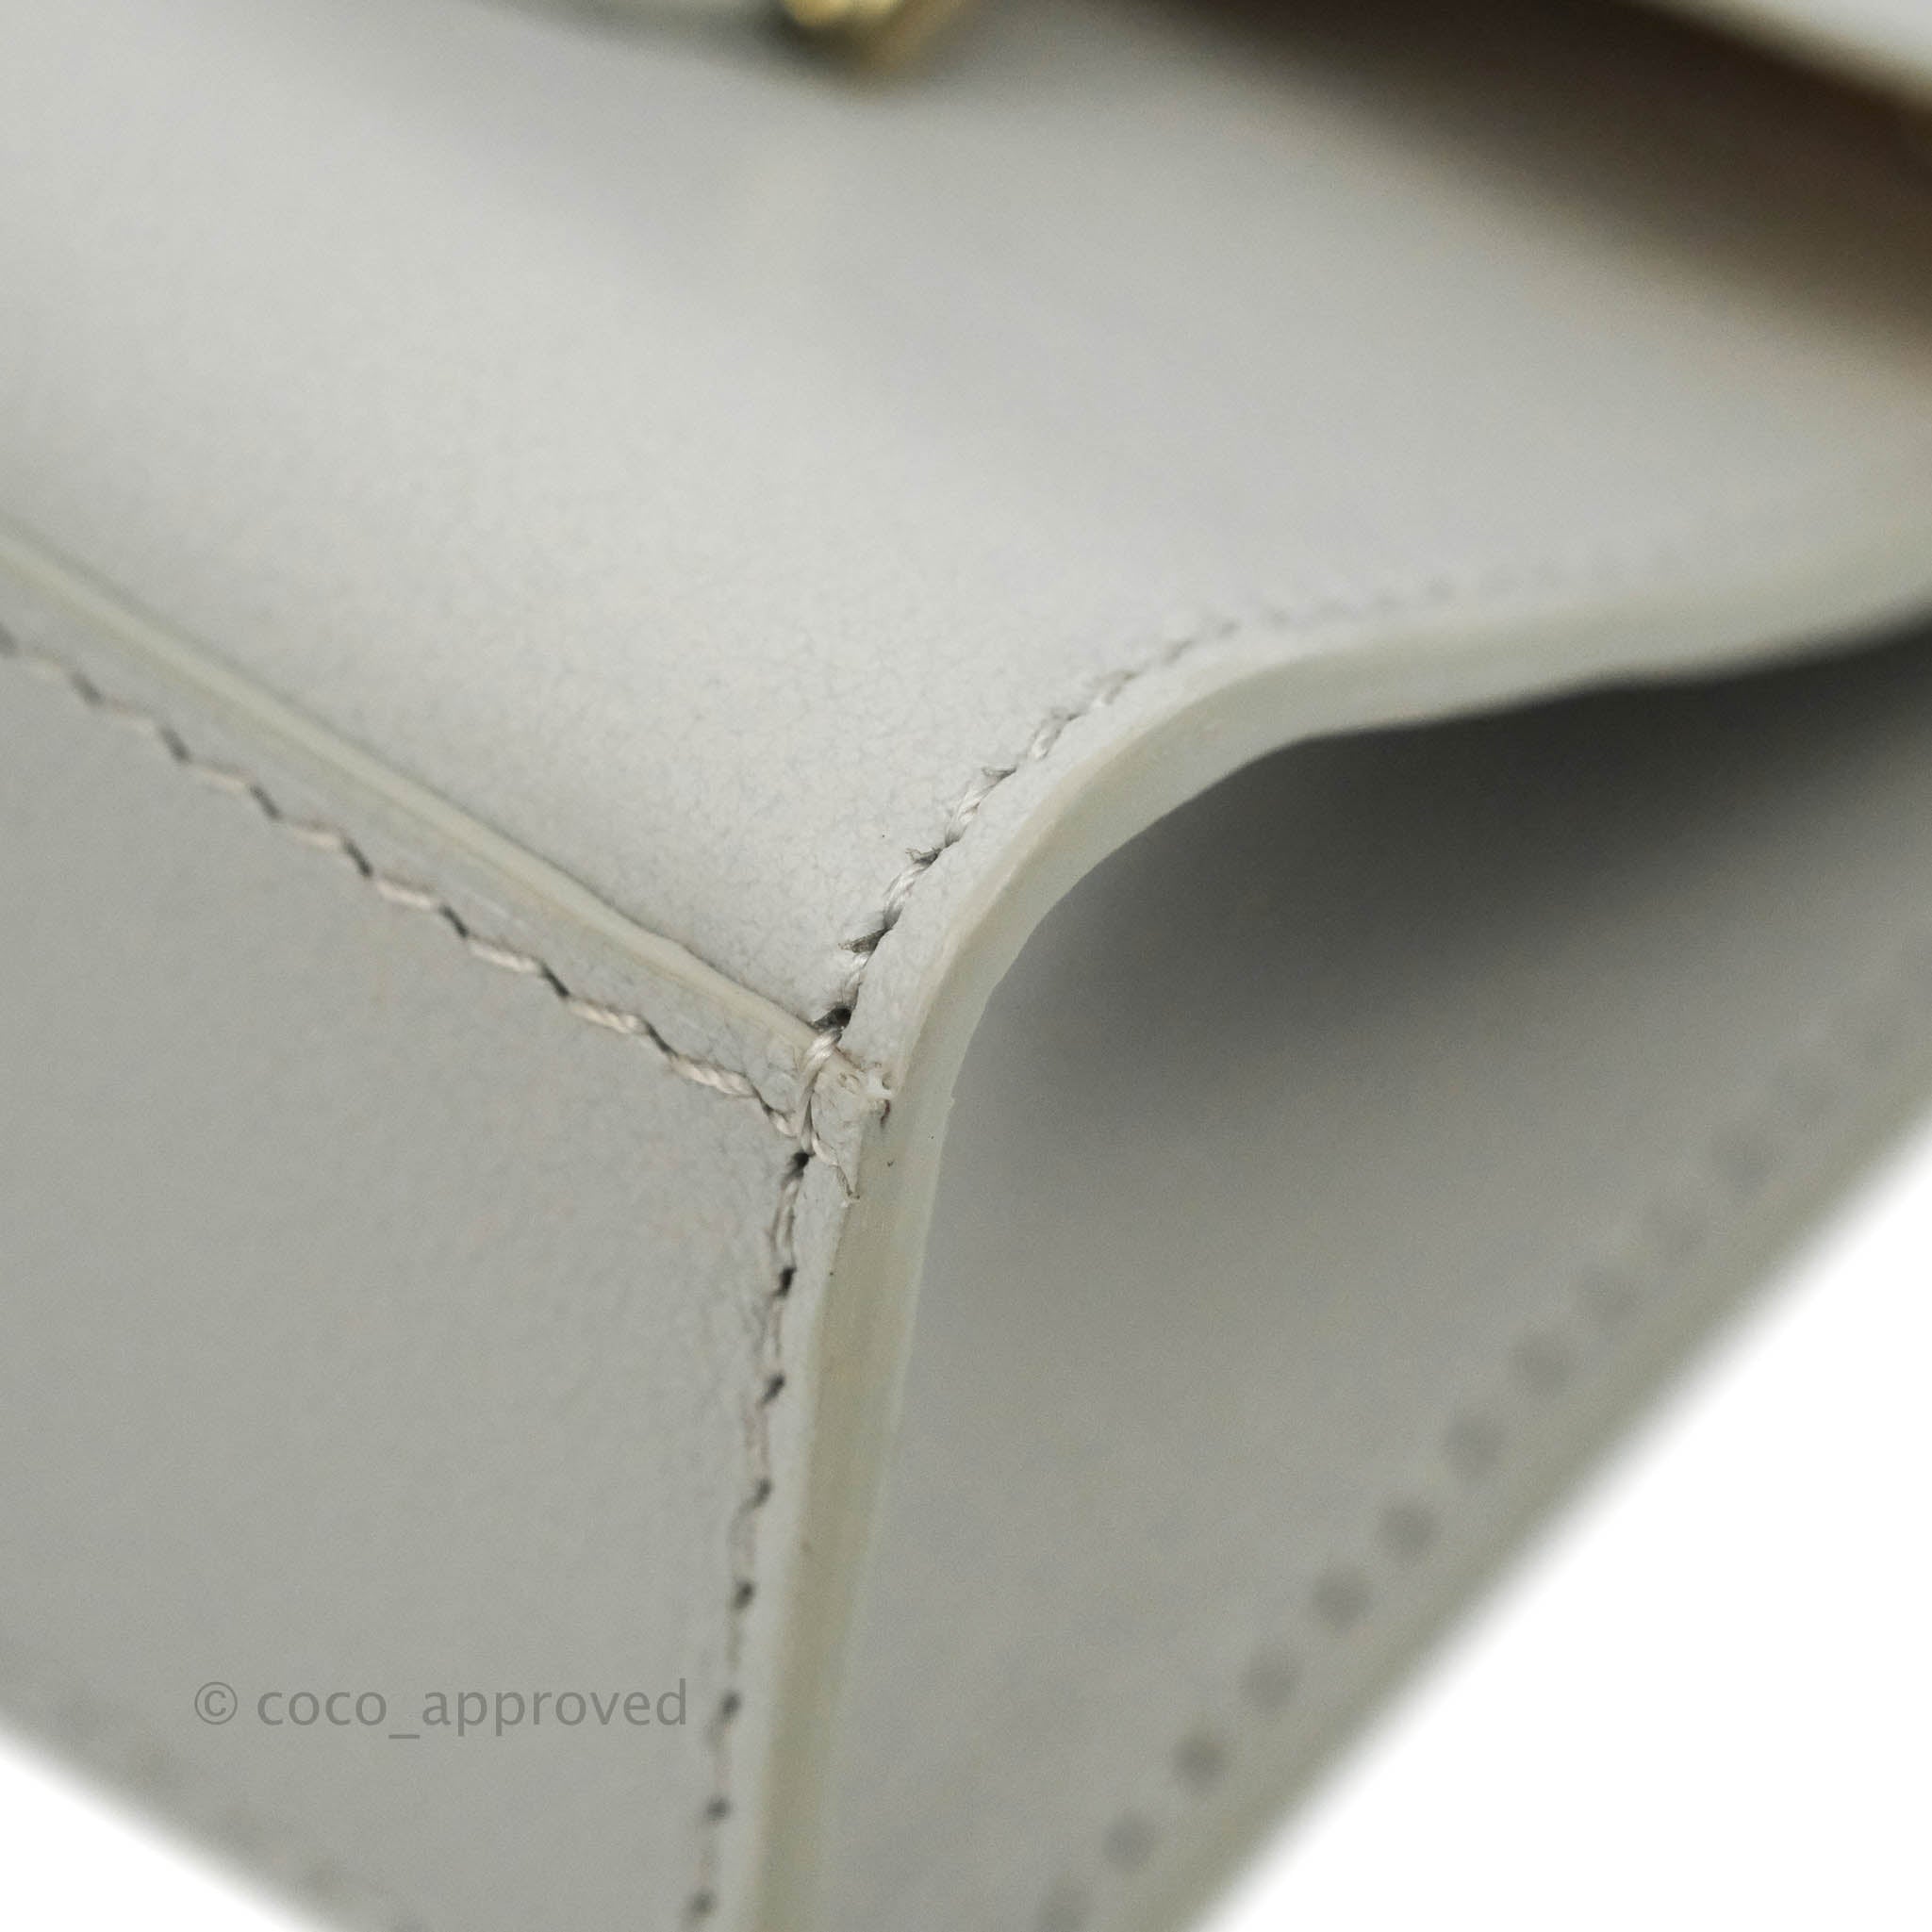 Delvaux Tempete Mini Grey Box Calfskin Silver Hardware – Coco Approved  Studio